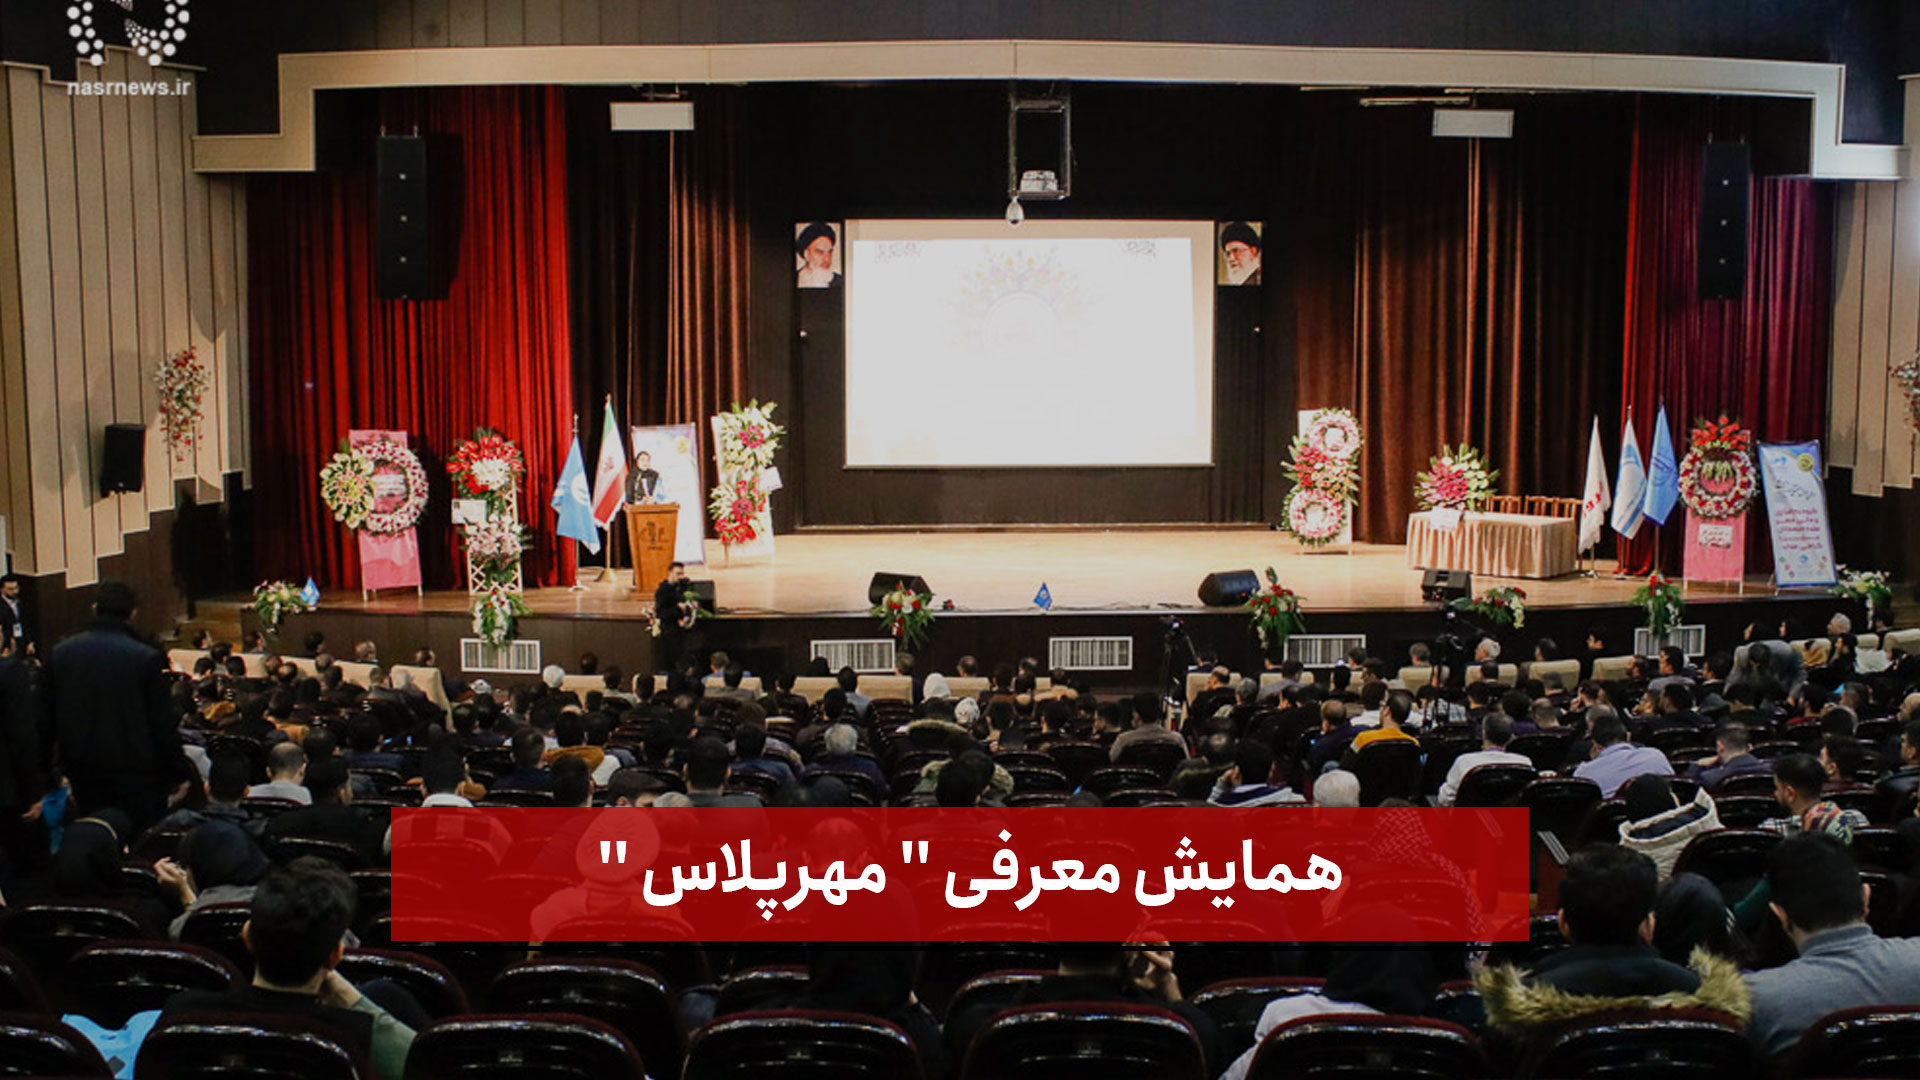 فیلم |  همایش معرفی  مهرپلاس  در تالار وحدت دانشگاه تبریز (1)